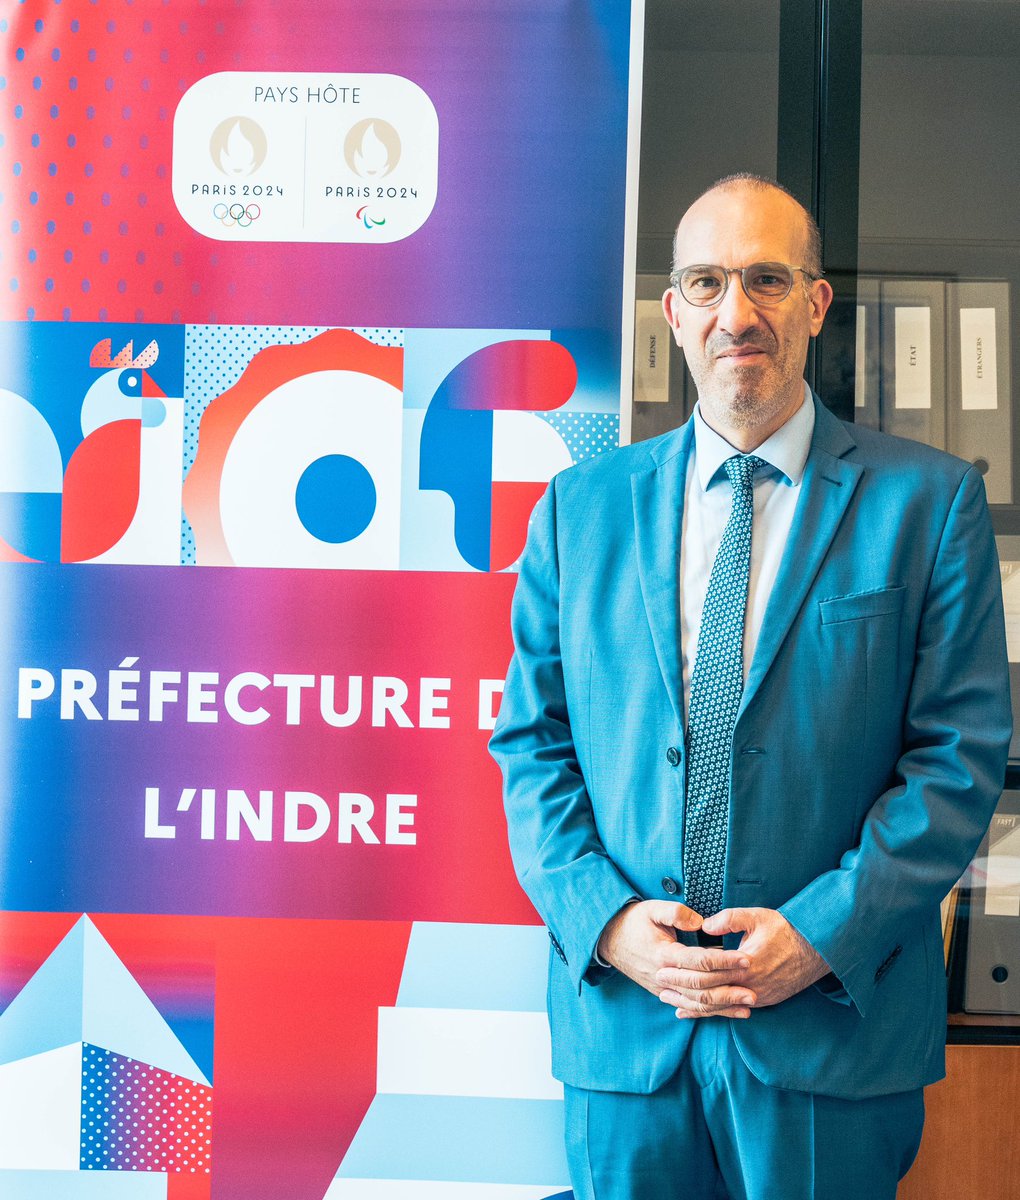 🧳🇫🇷 Aujourd'hui, nous sommes ravis d'accueillir Renaud Lassince, en qualité de directeur des services du cabinet du préfet de l'Indre. Nous lui souhaitons la bienvenue à préfecture et dans le département de l'Indre ! 👏🎉 #Indre #Bienvenue #préfecture